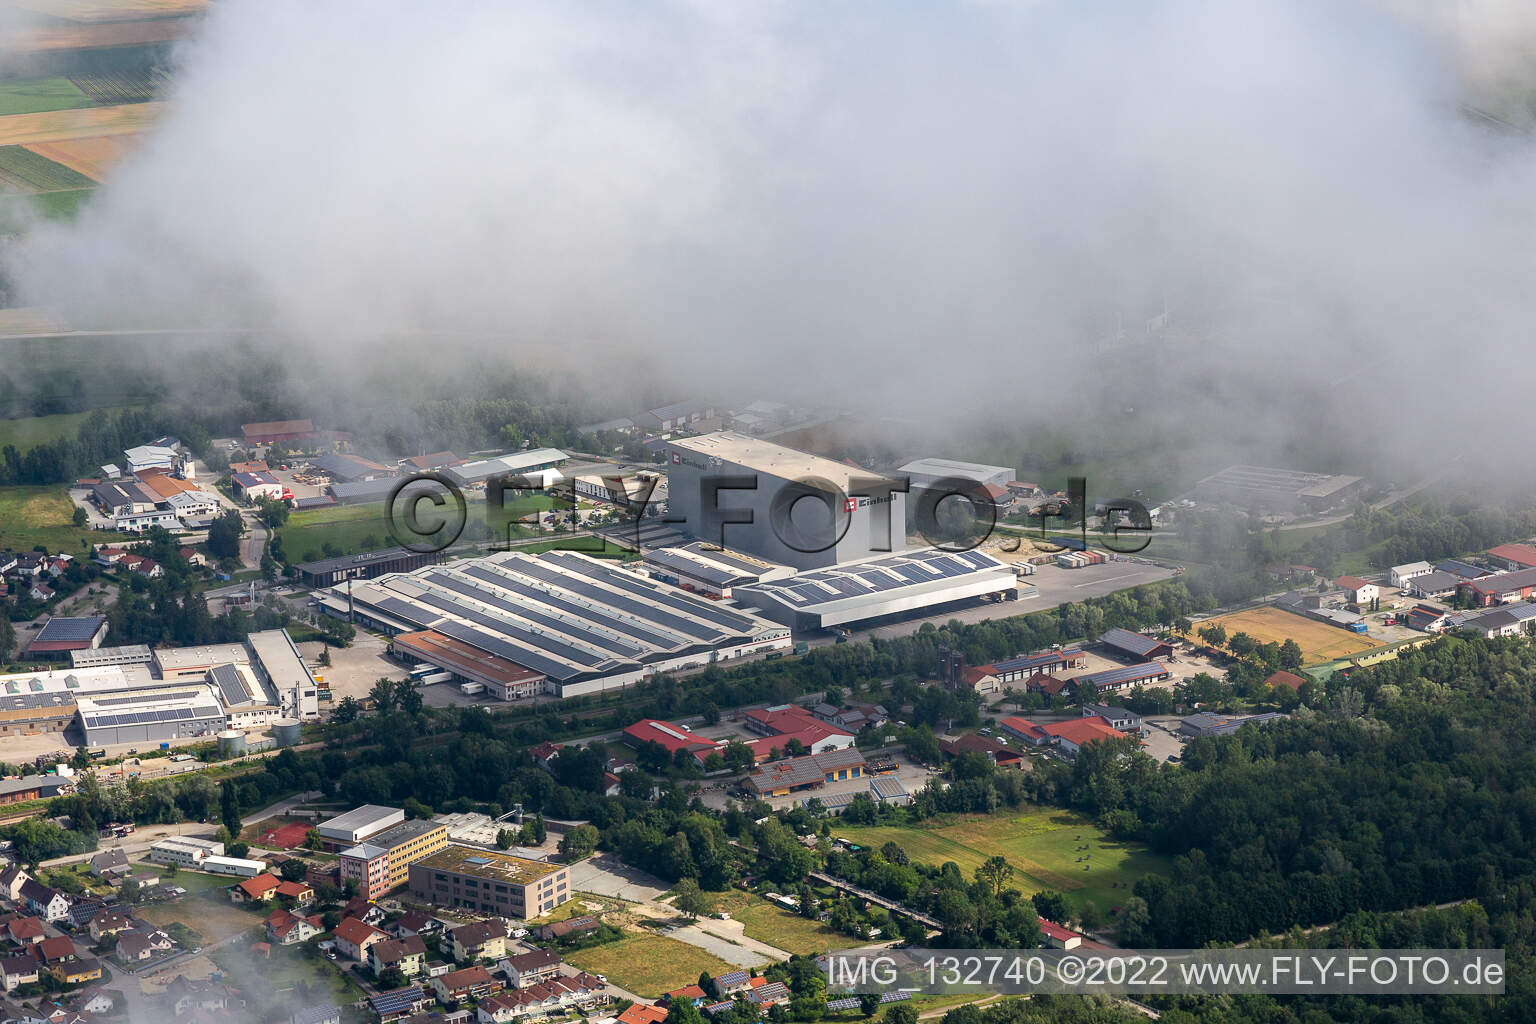 Luftbild von Einhell Germany AG in Landau an der Isar im Bundesland Bayern, Deutschland